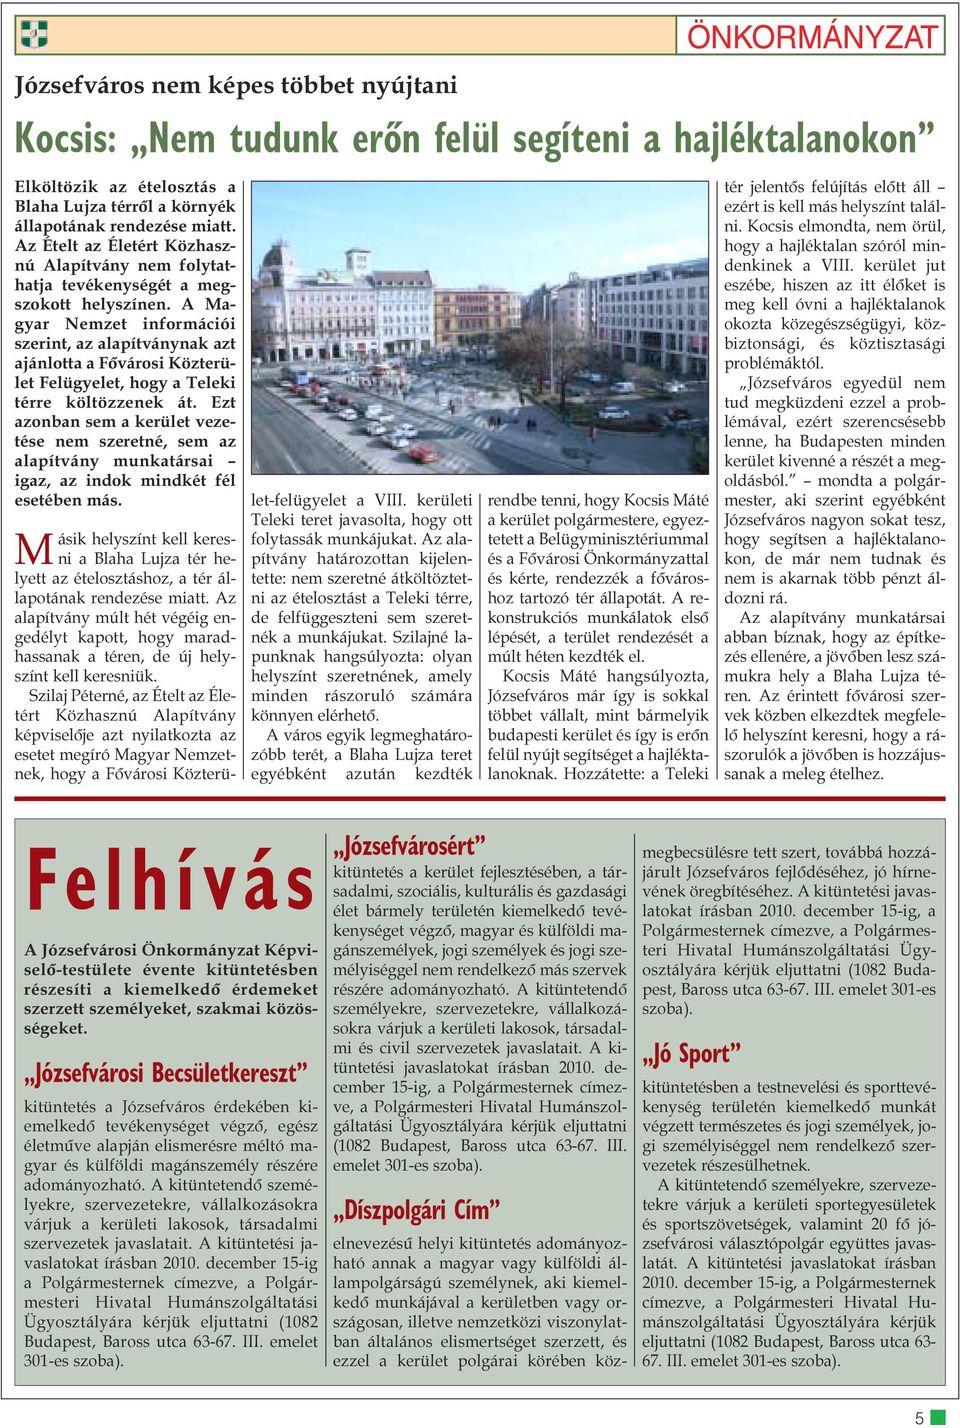 A Magyar Nemzet információi szerint, az alapítványnak azt ajánlotta a Fõvárosi Közterület Felügyelet, hogy a Teleki térre költözzenek át.